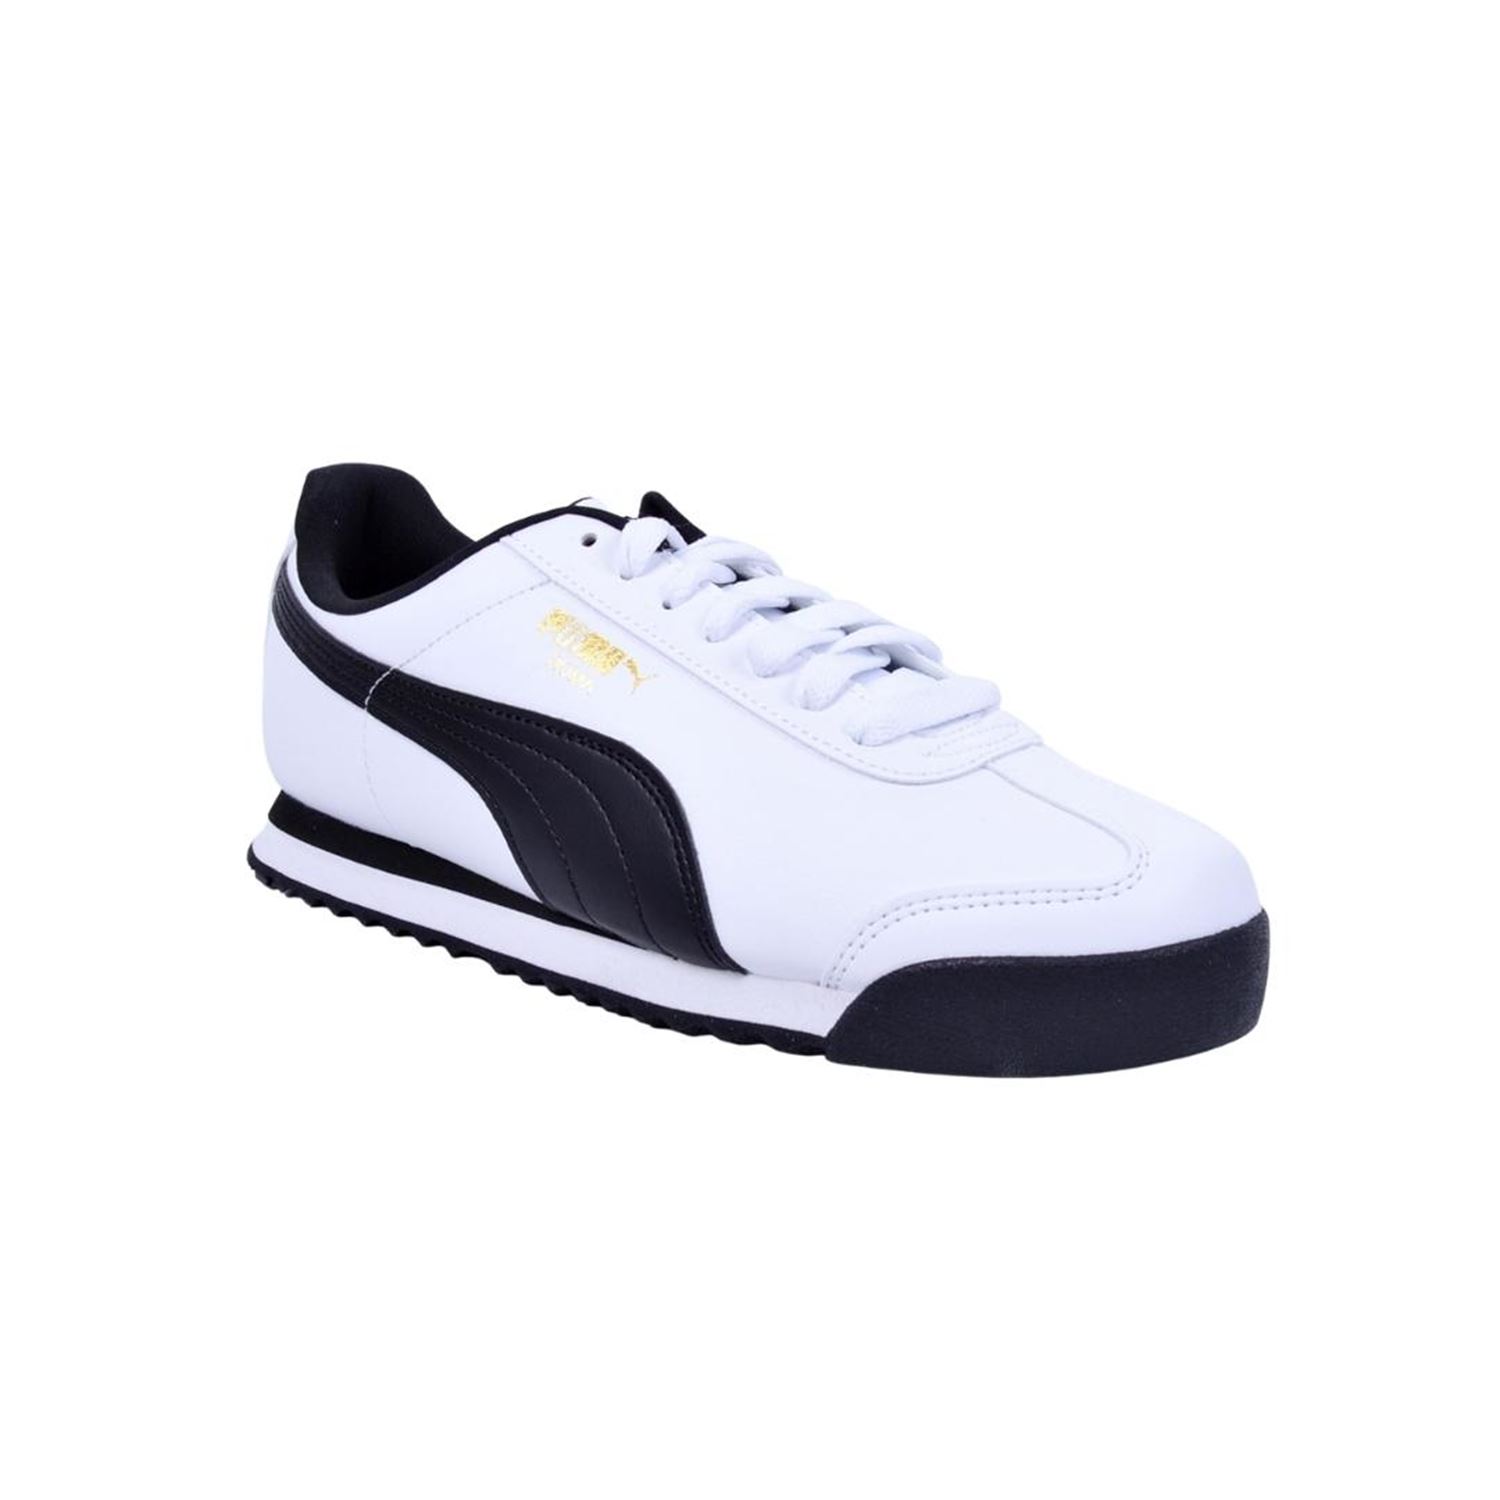 Puma 353572-04 Roma Beyaz Spor Ayakkabı